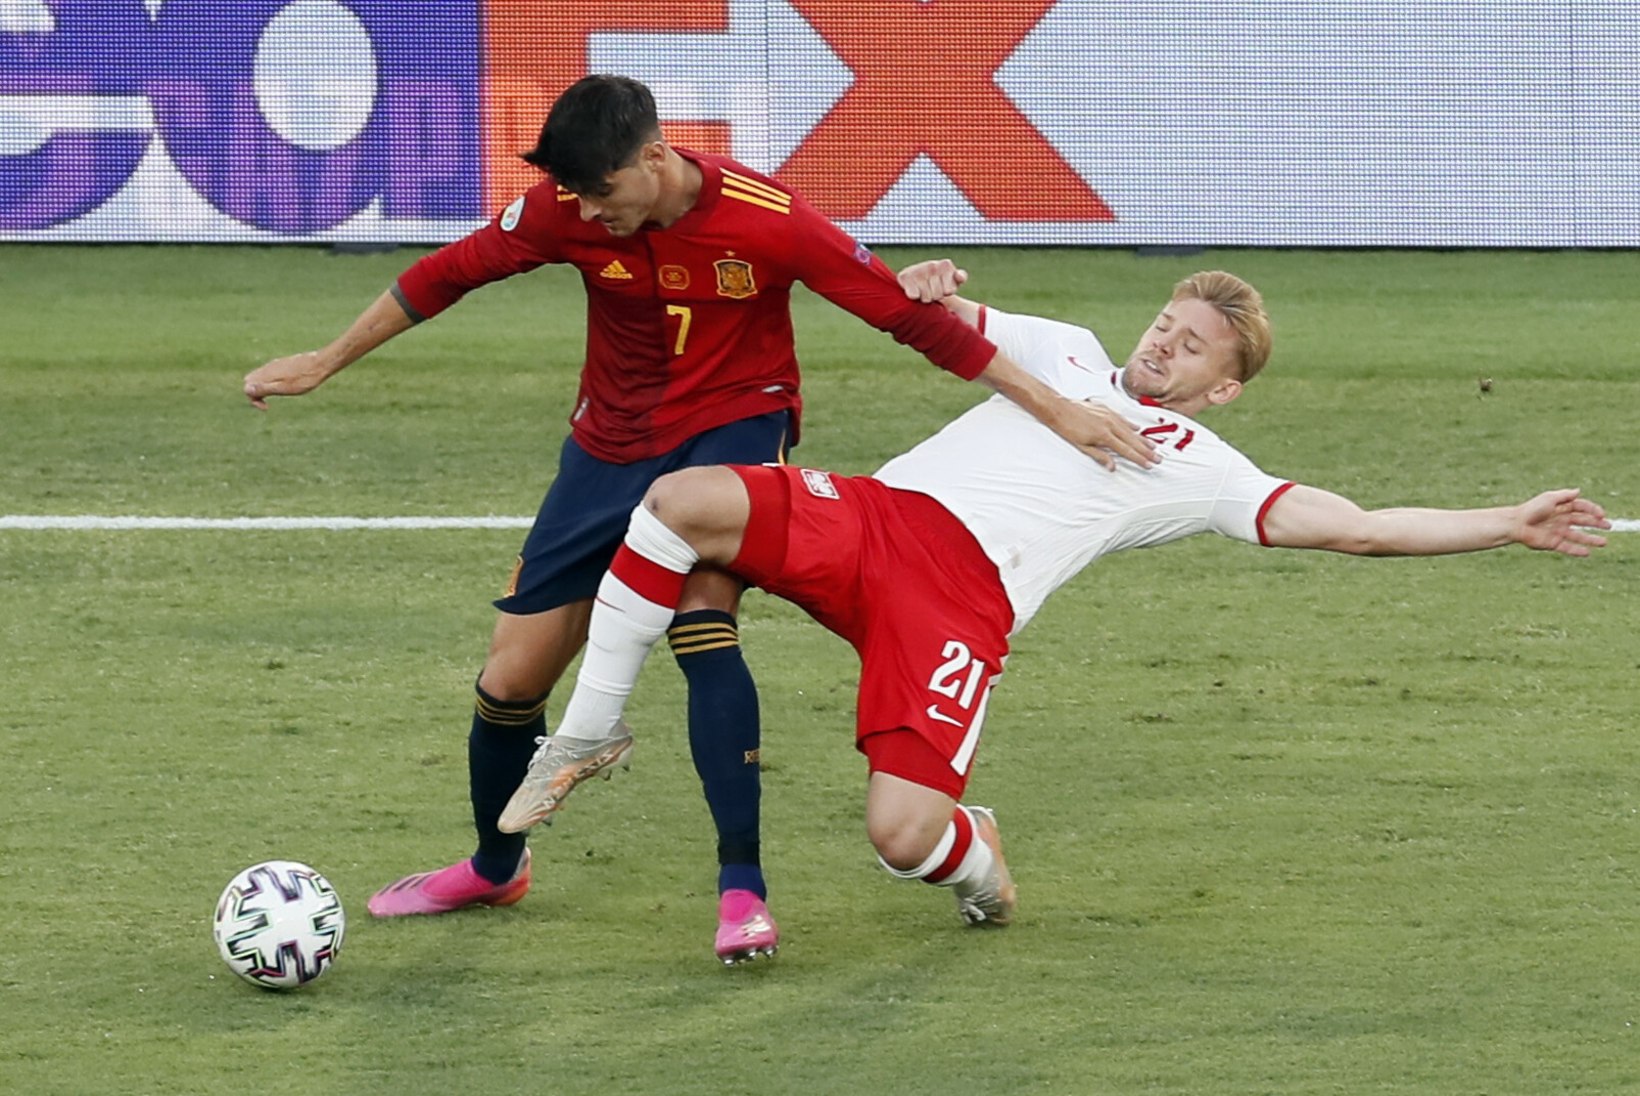 Jalgpalli EMi blogi | Hispaania jätkab võiduta, Saksamaa lõi Portugalil puuri täis, Ungari vormistas suurüllatuse